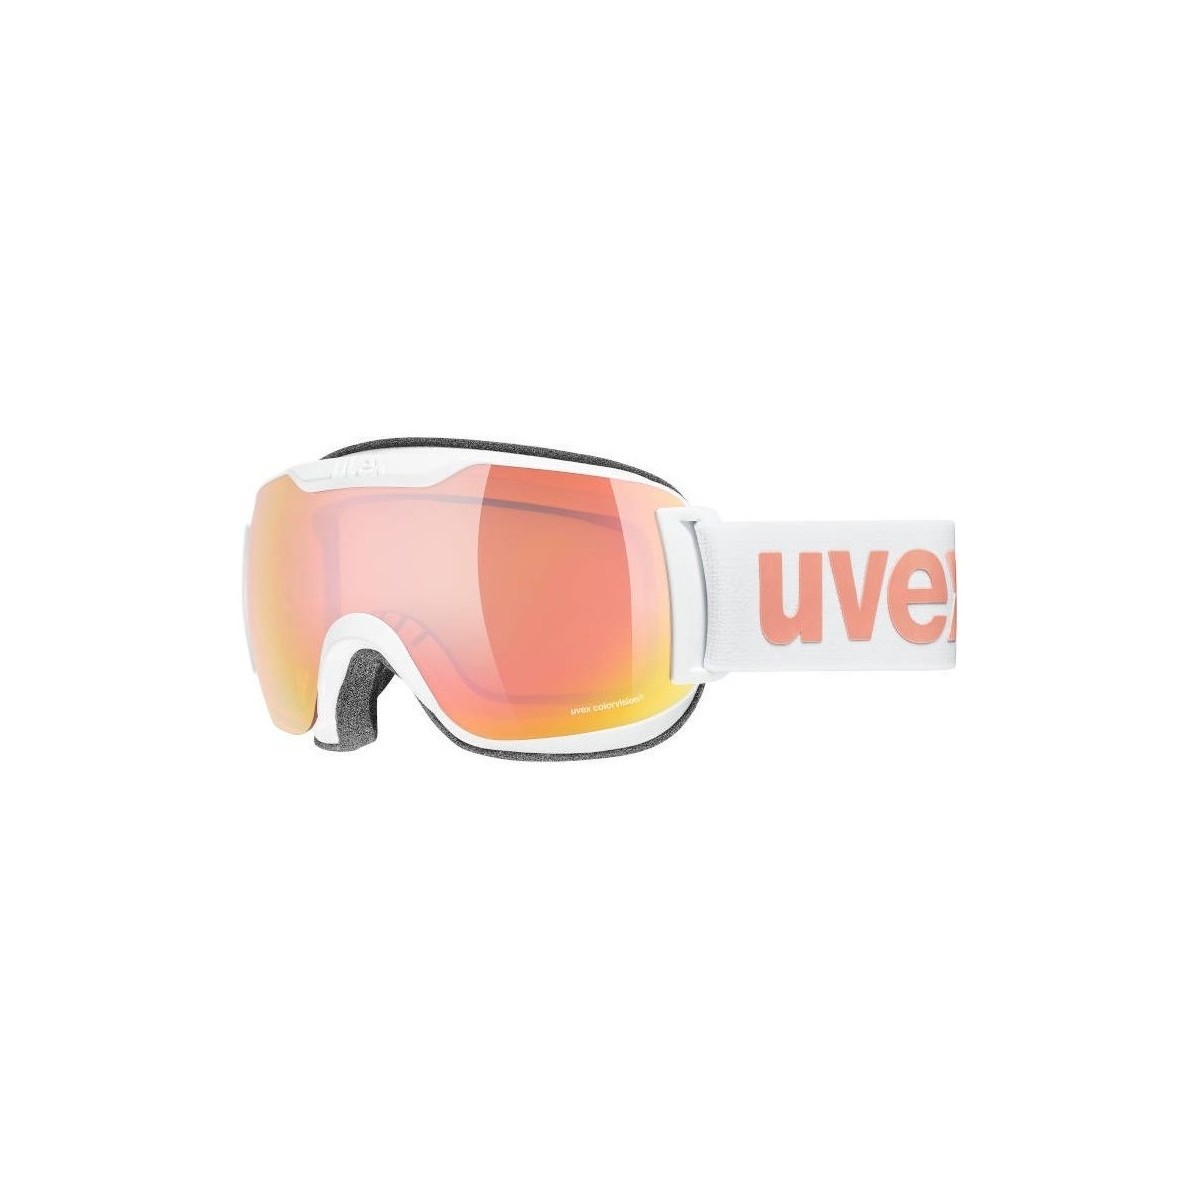 Dodatki  Dodatki šport Uvex Downhill 2000 S CV 1030 2021 Bela, Roza